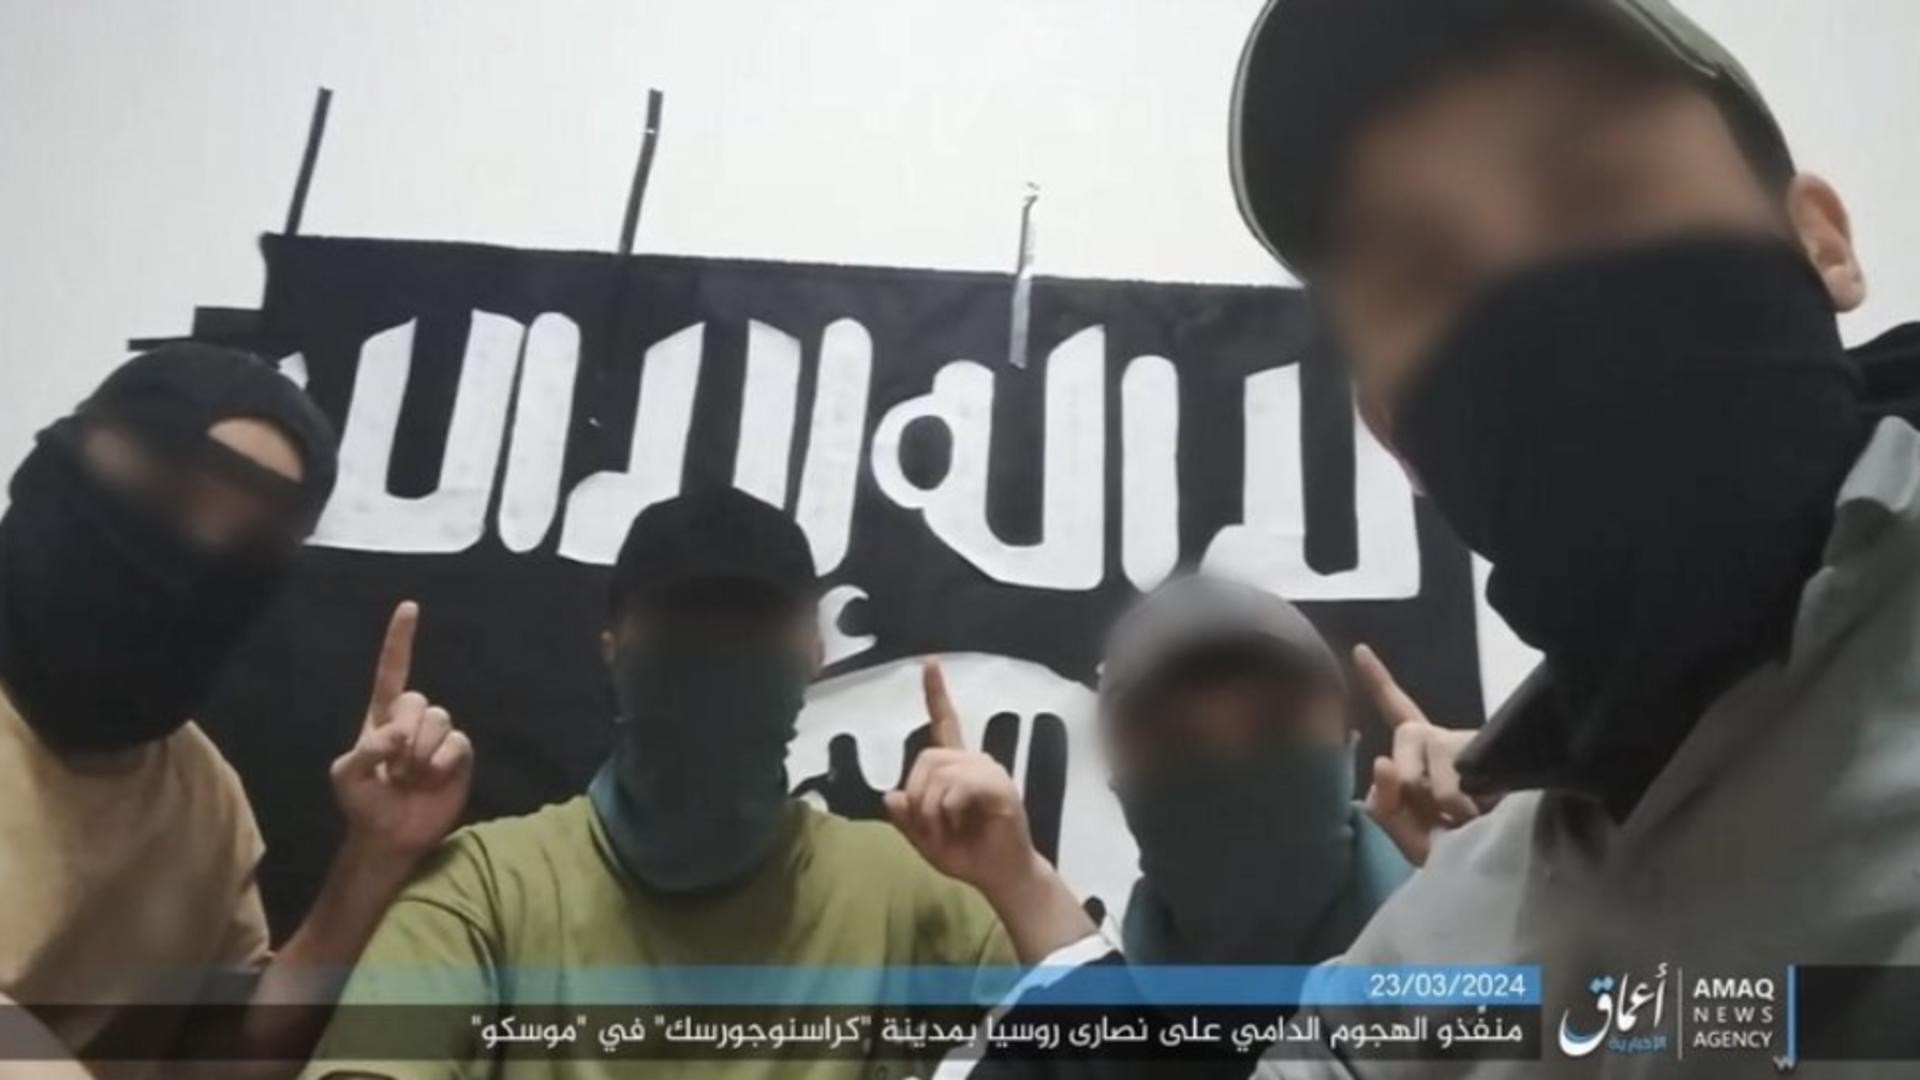 Poza a fost postata de gruparea teroristă Stat Islamic. Foto/SI